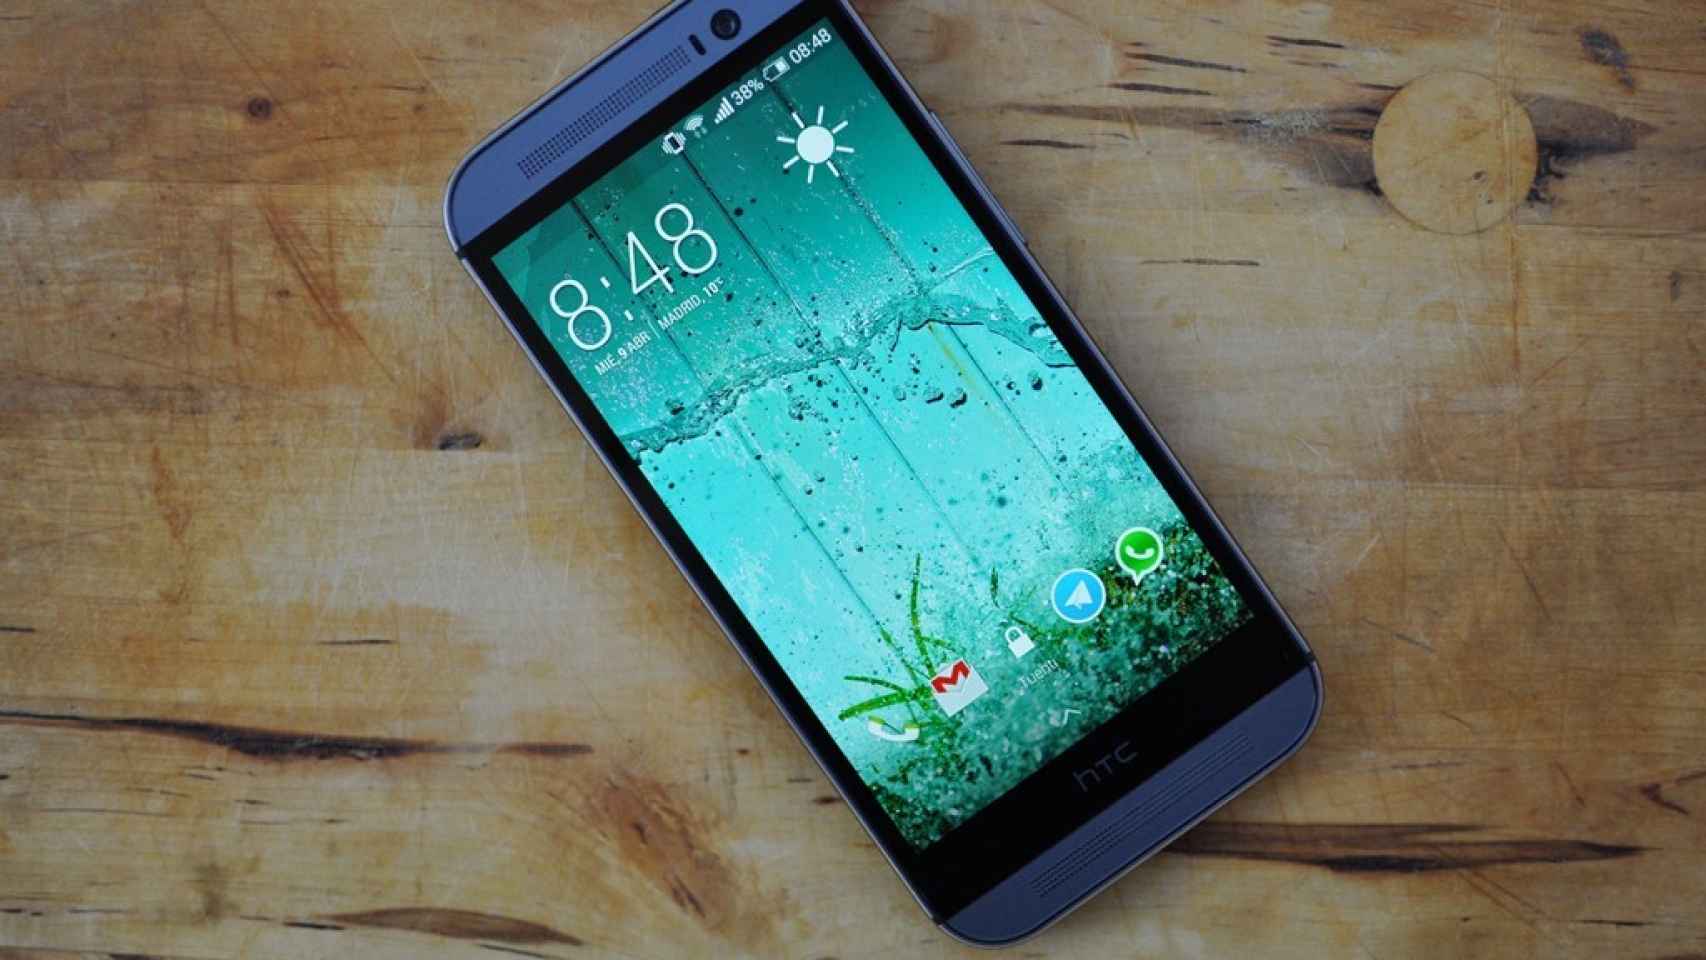 HTC One M8: Análisis y experiencia de uso